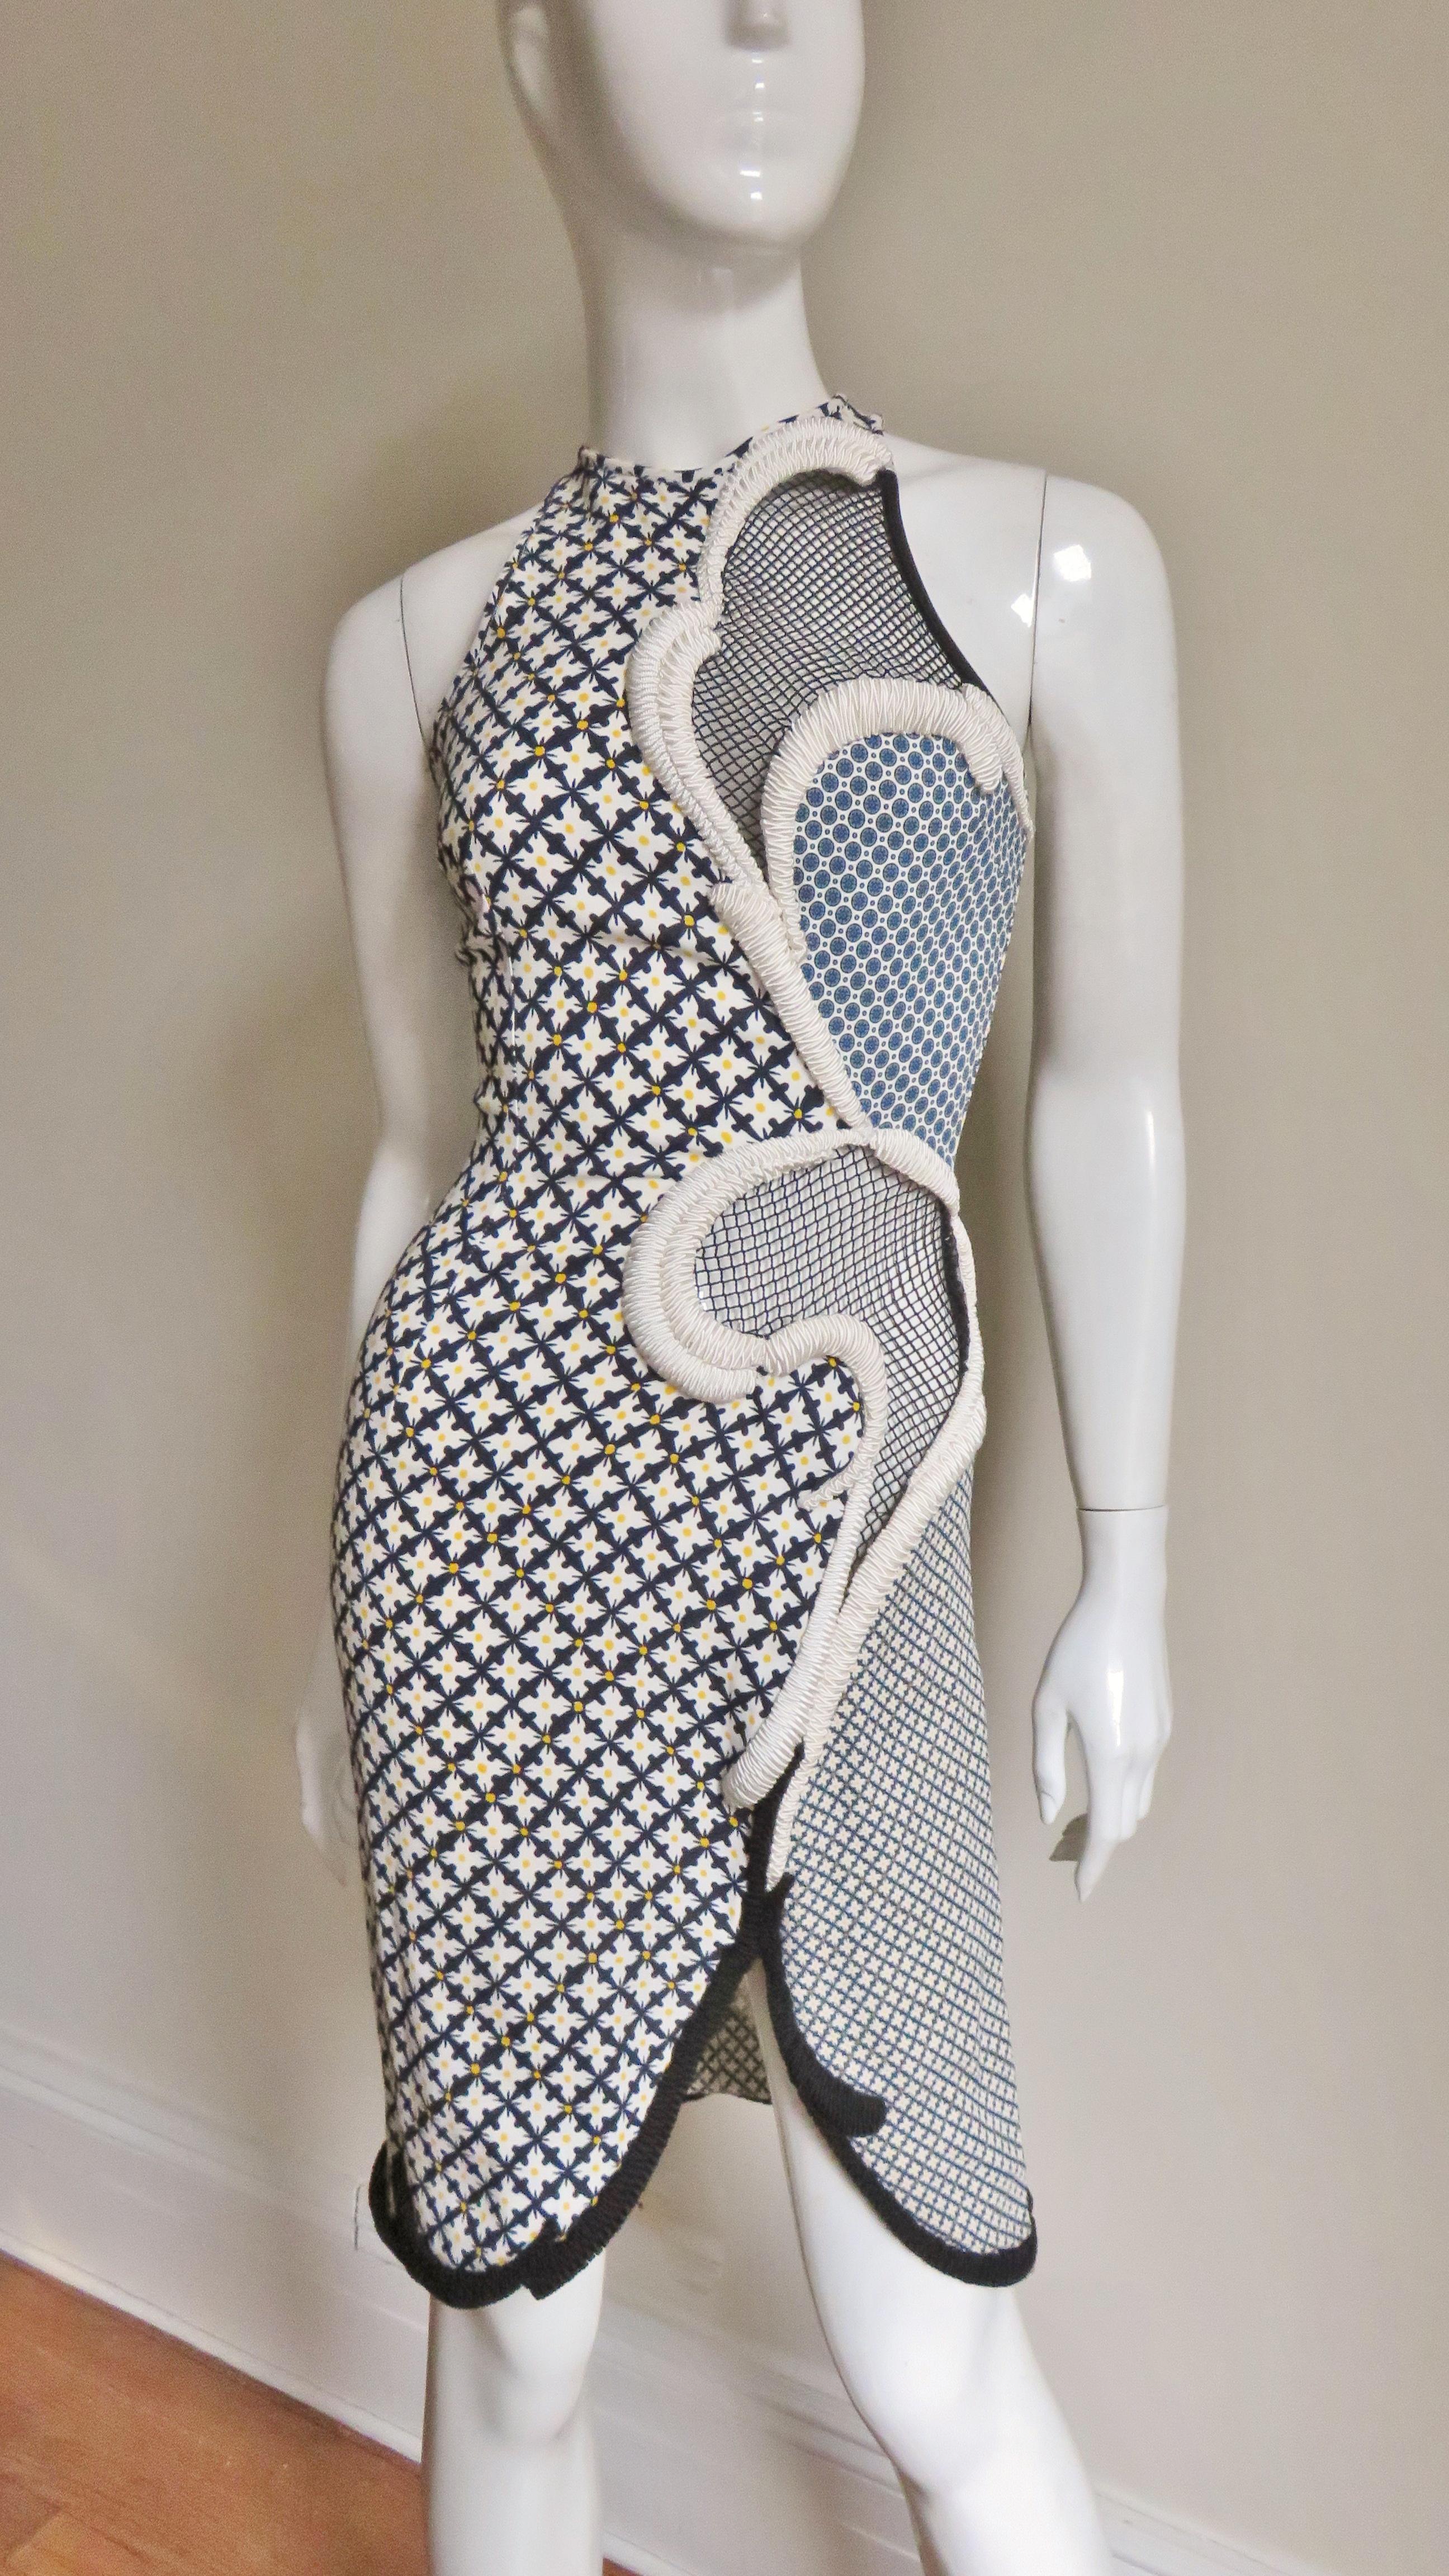 Stella McCartney Neues Kleid mit gemischten Mustern für die Anzeigenkampagne 6